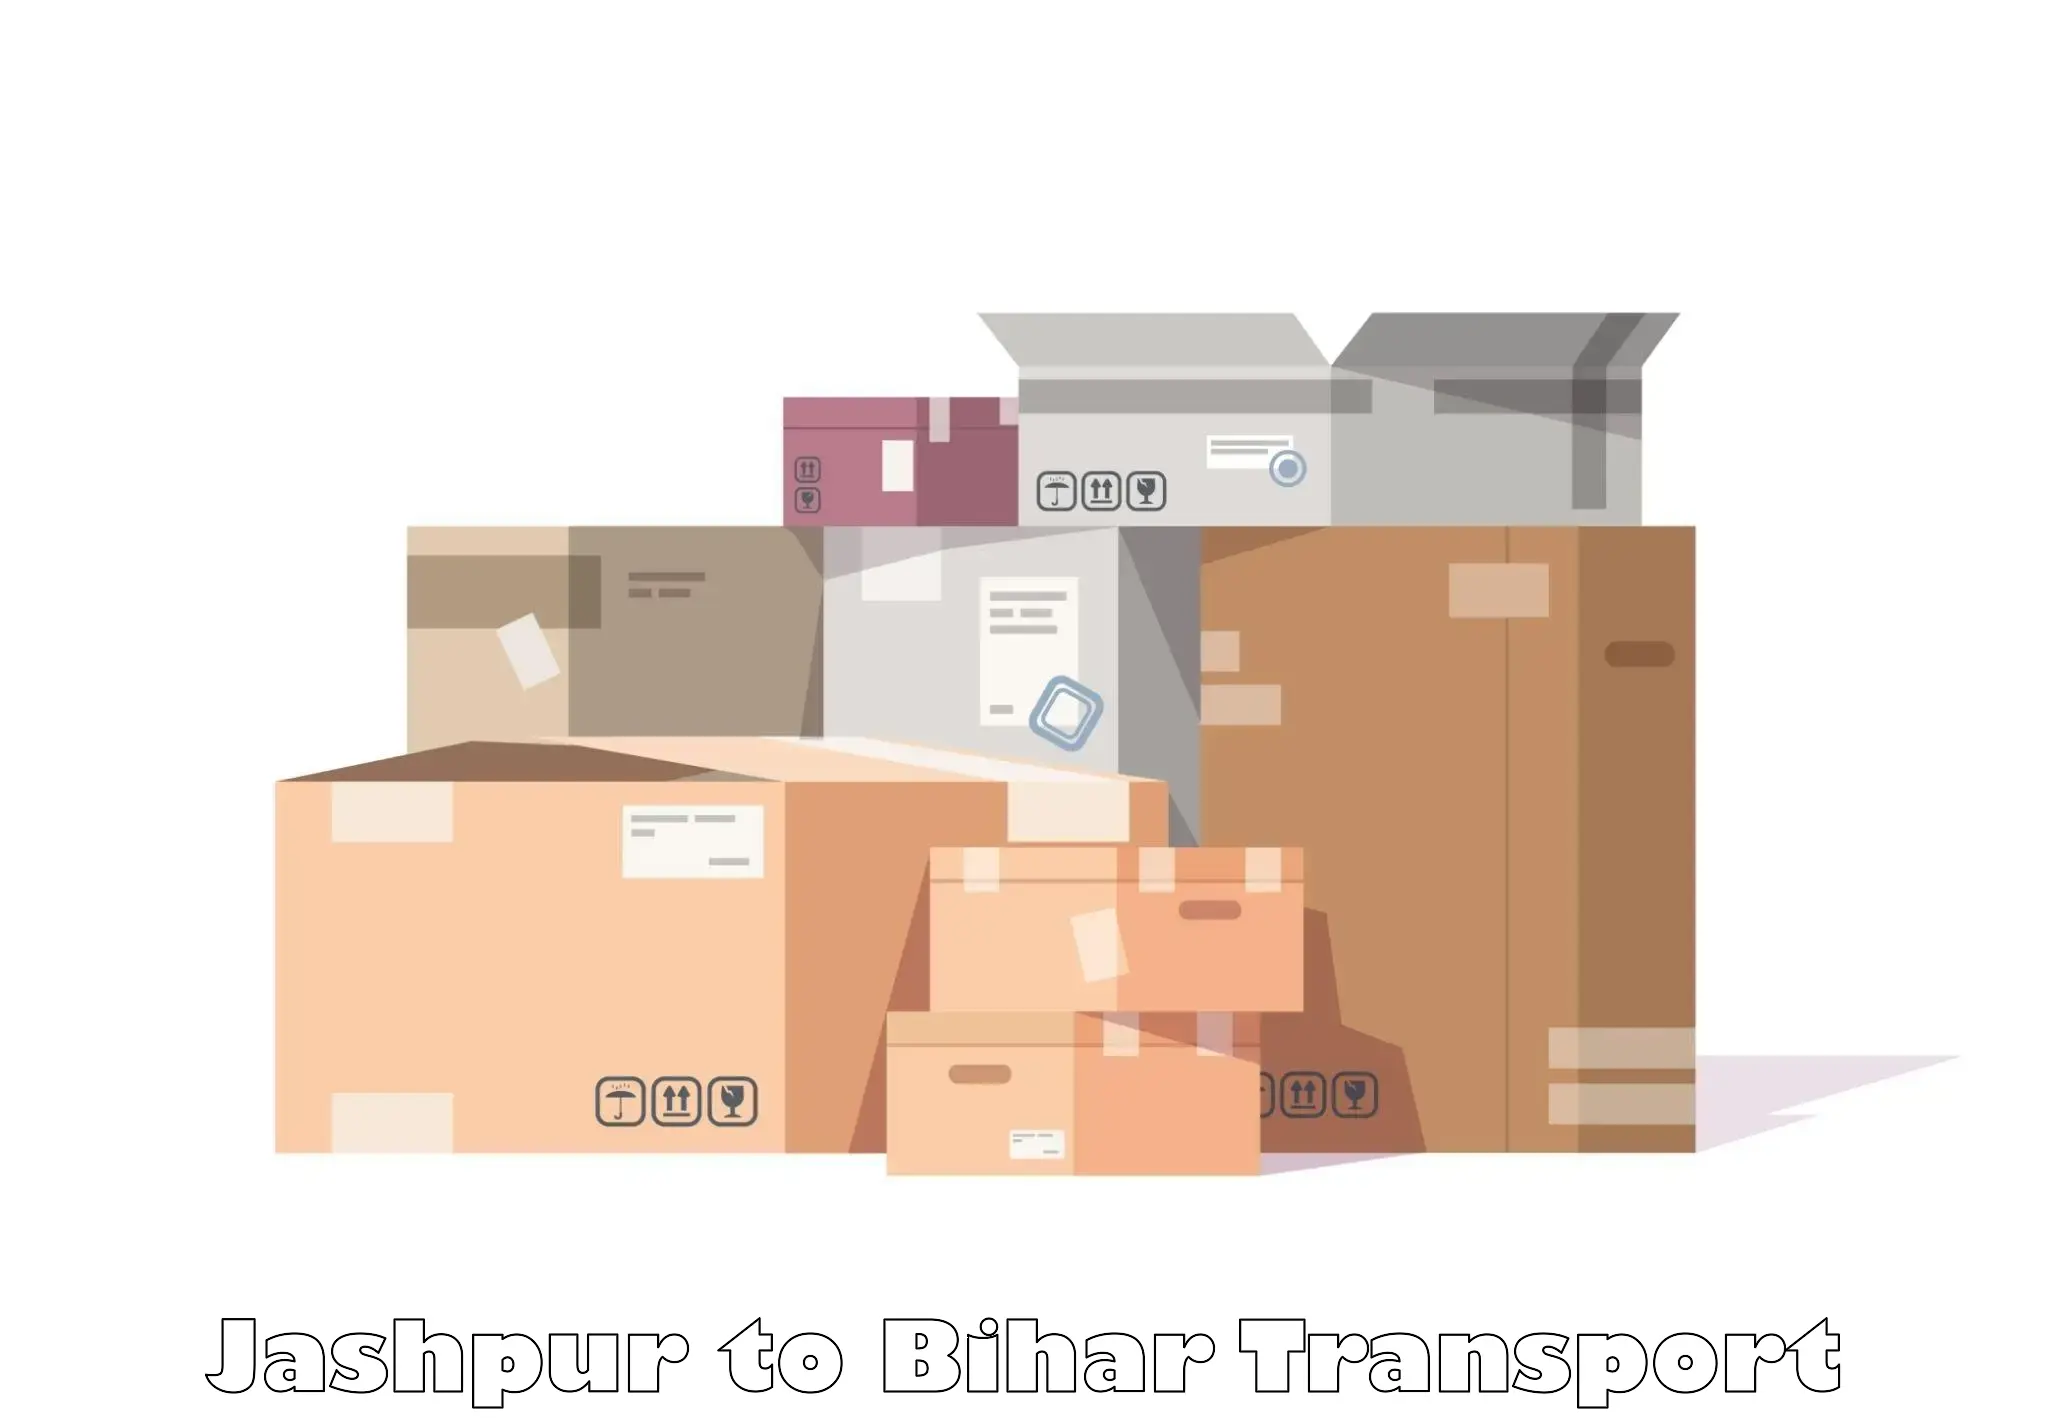 Transportation services Jashpur to Bahadurganj